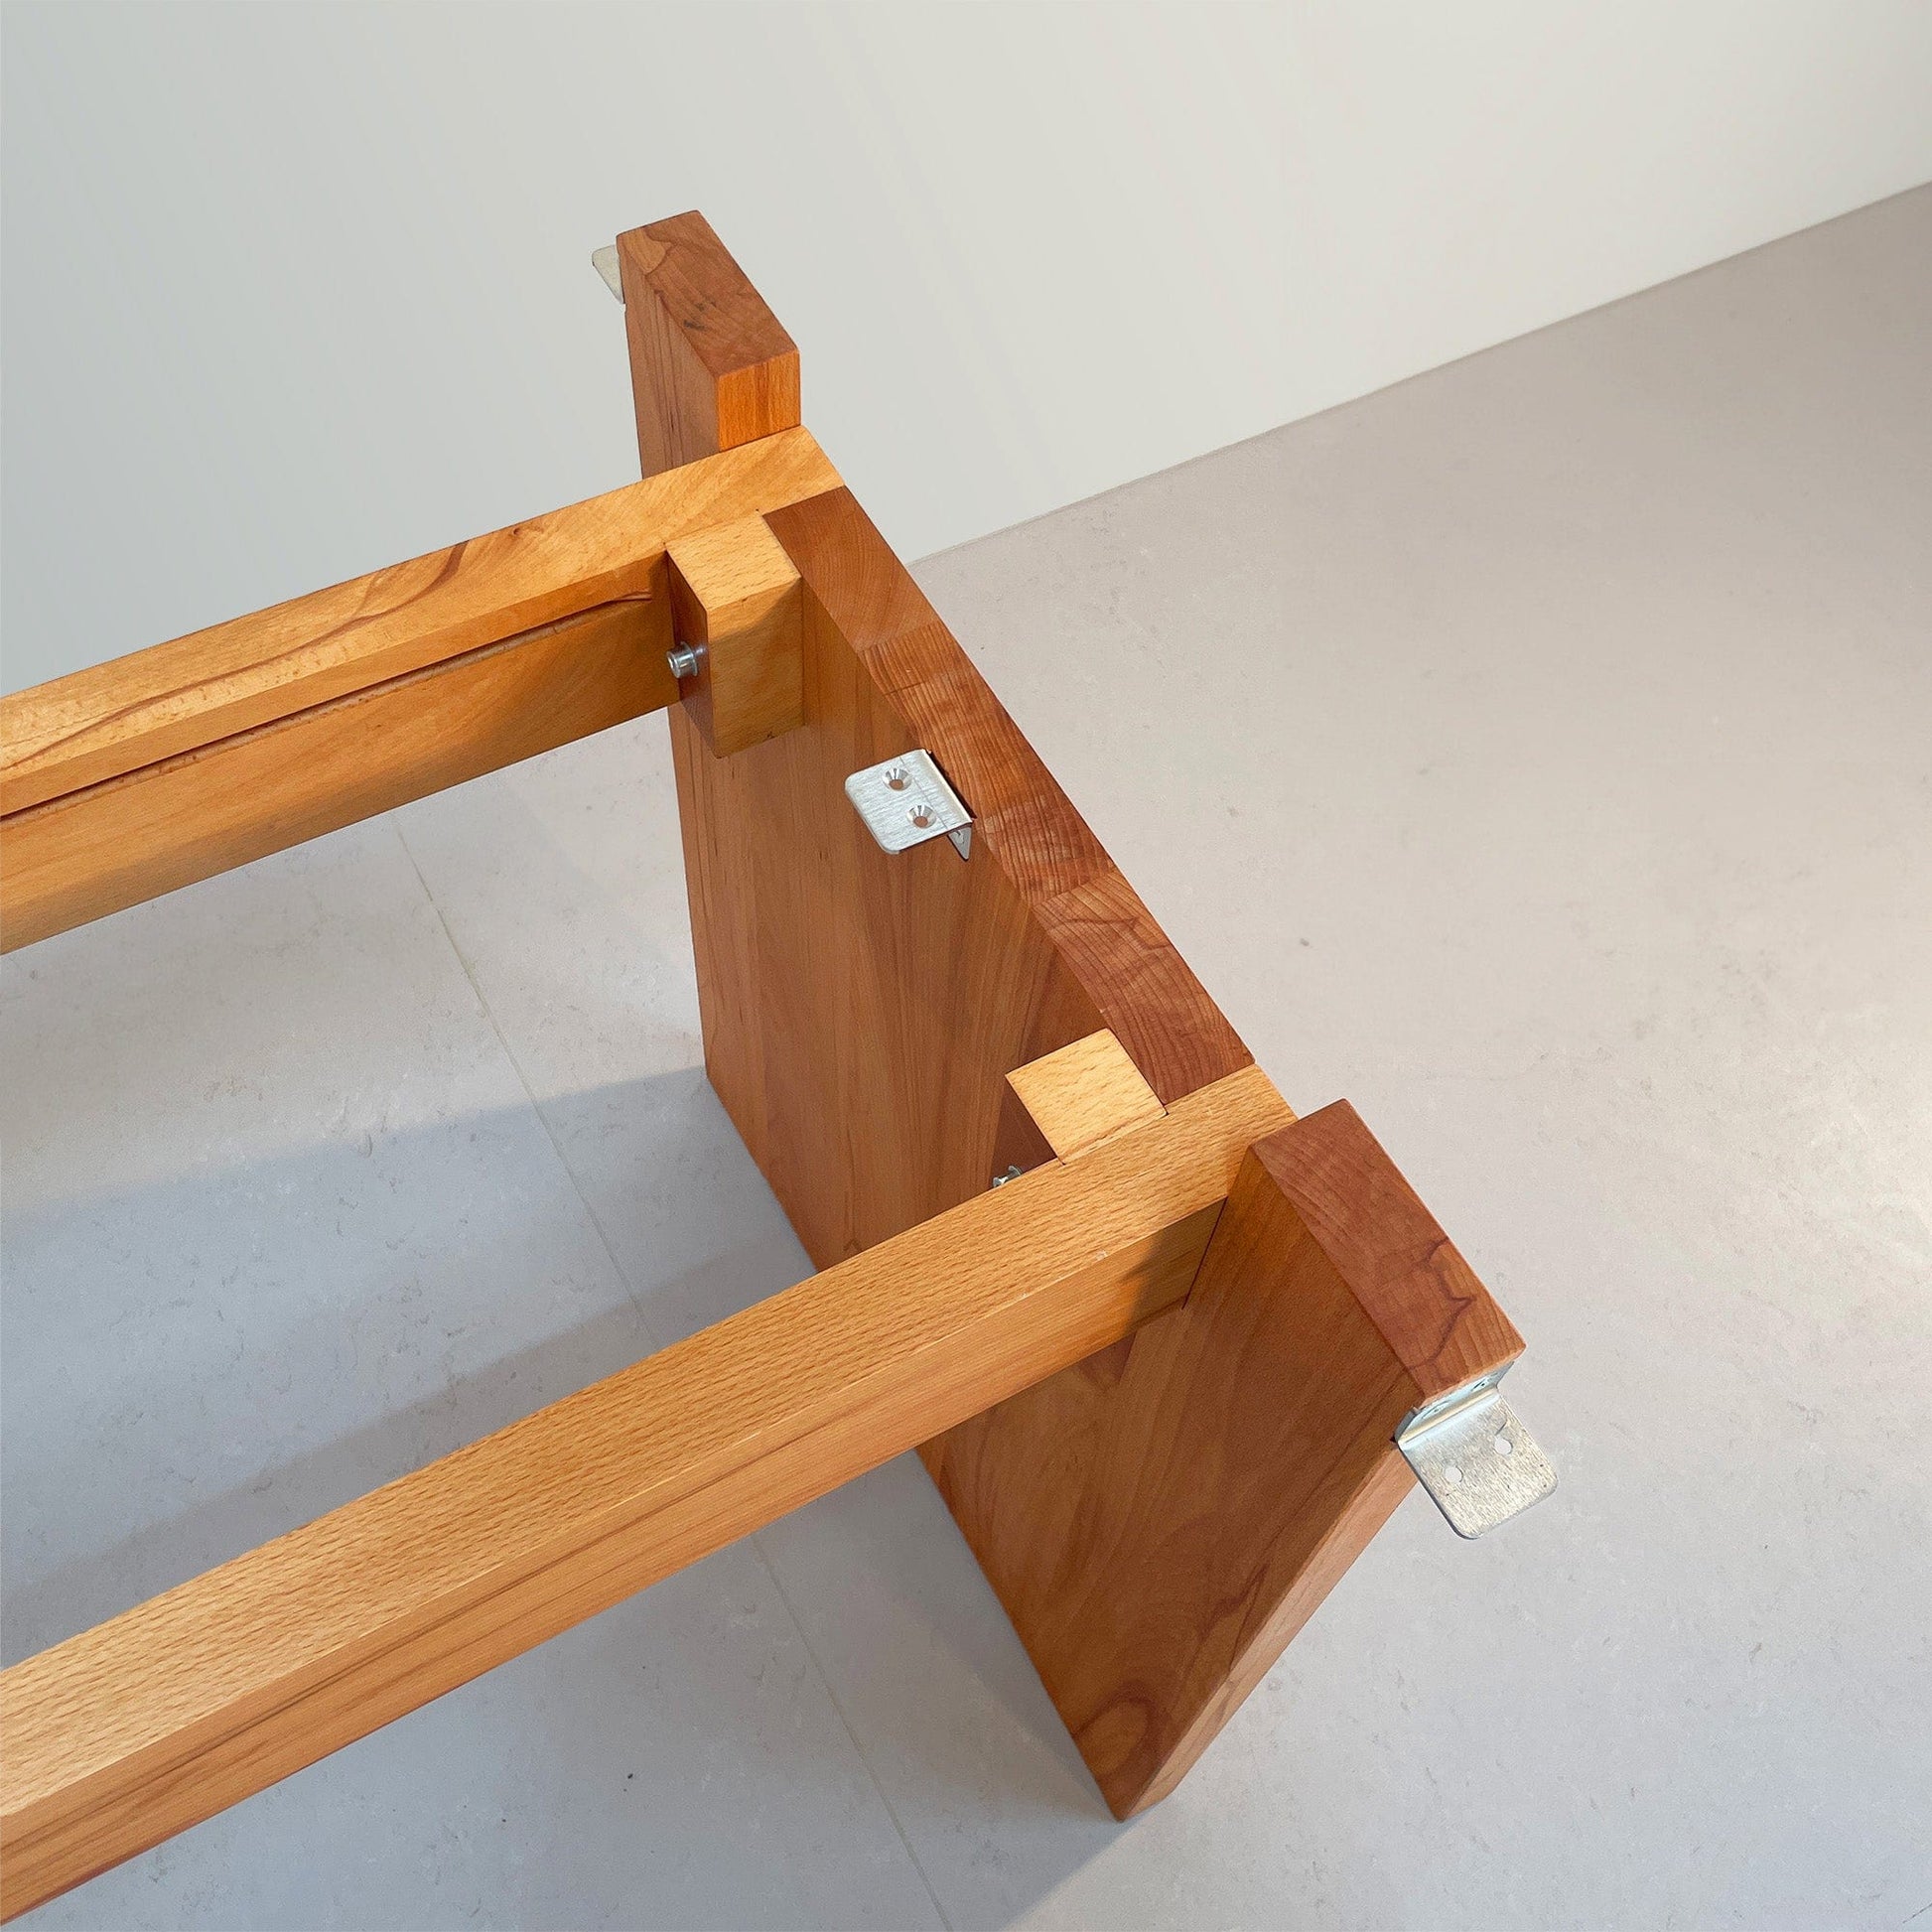 ZEN/10 Tisch der Holzmanufaktur. Design von den Stuttgarter Architekten Bottega + Ehrhardt